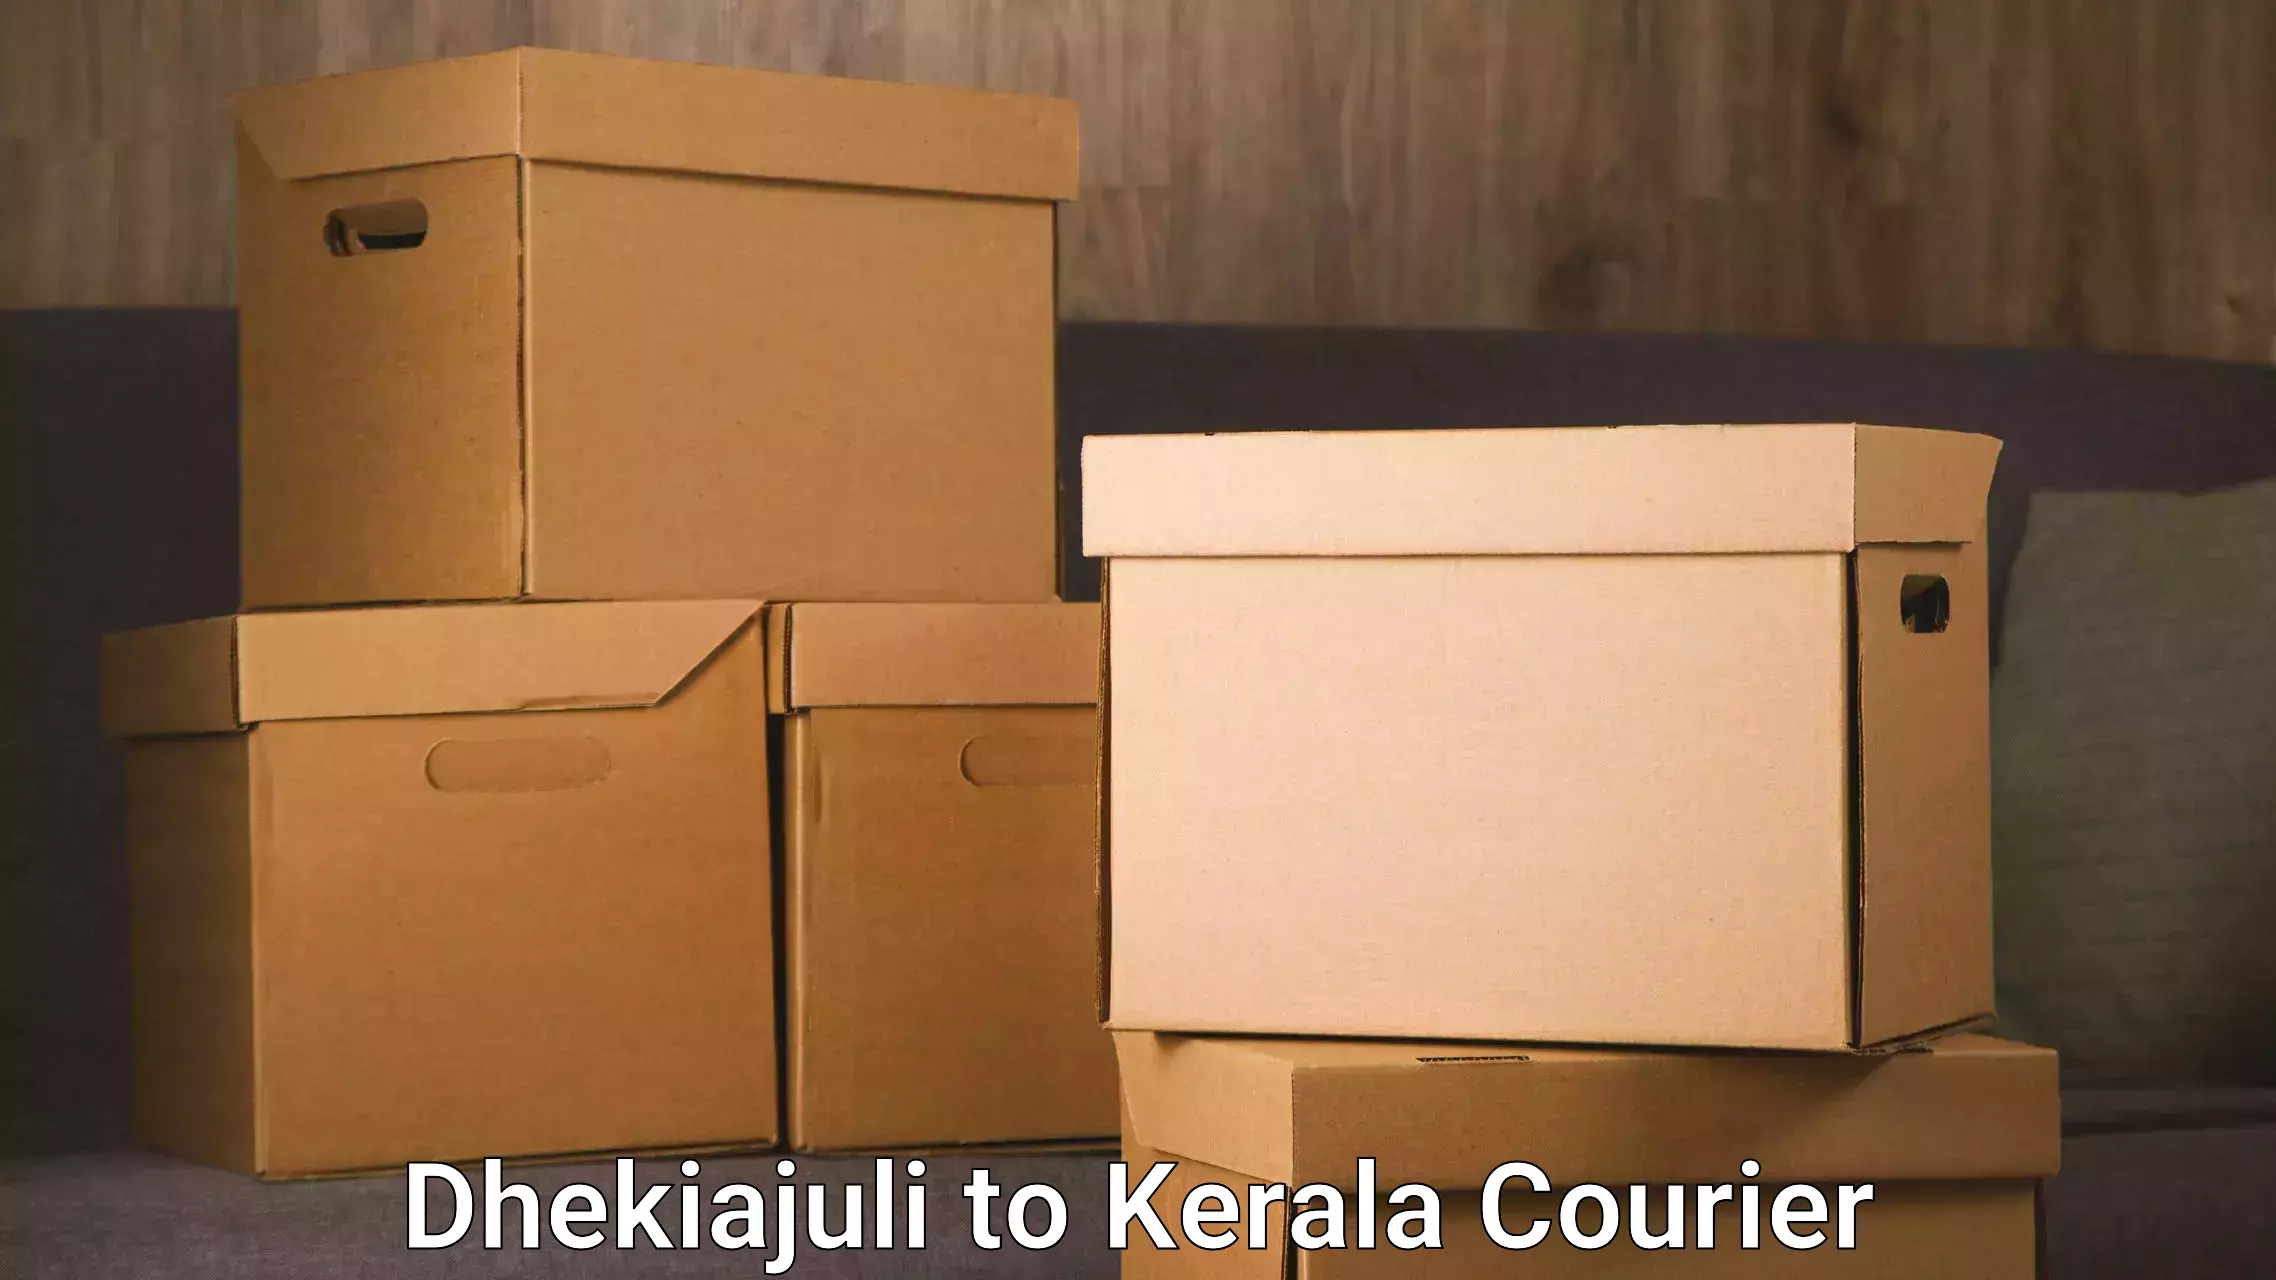 Flexible delivery schedules Dhekiajuli to Cherthala